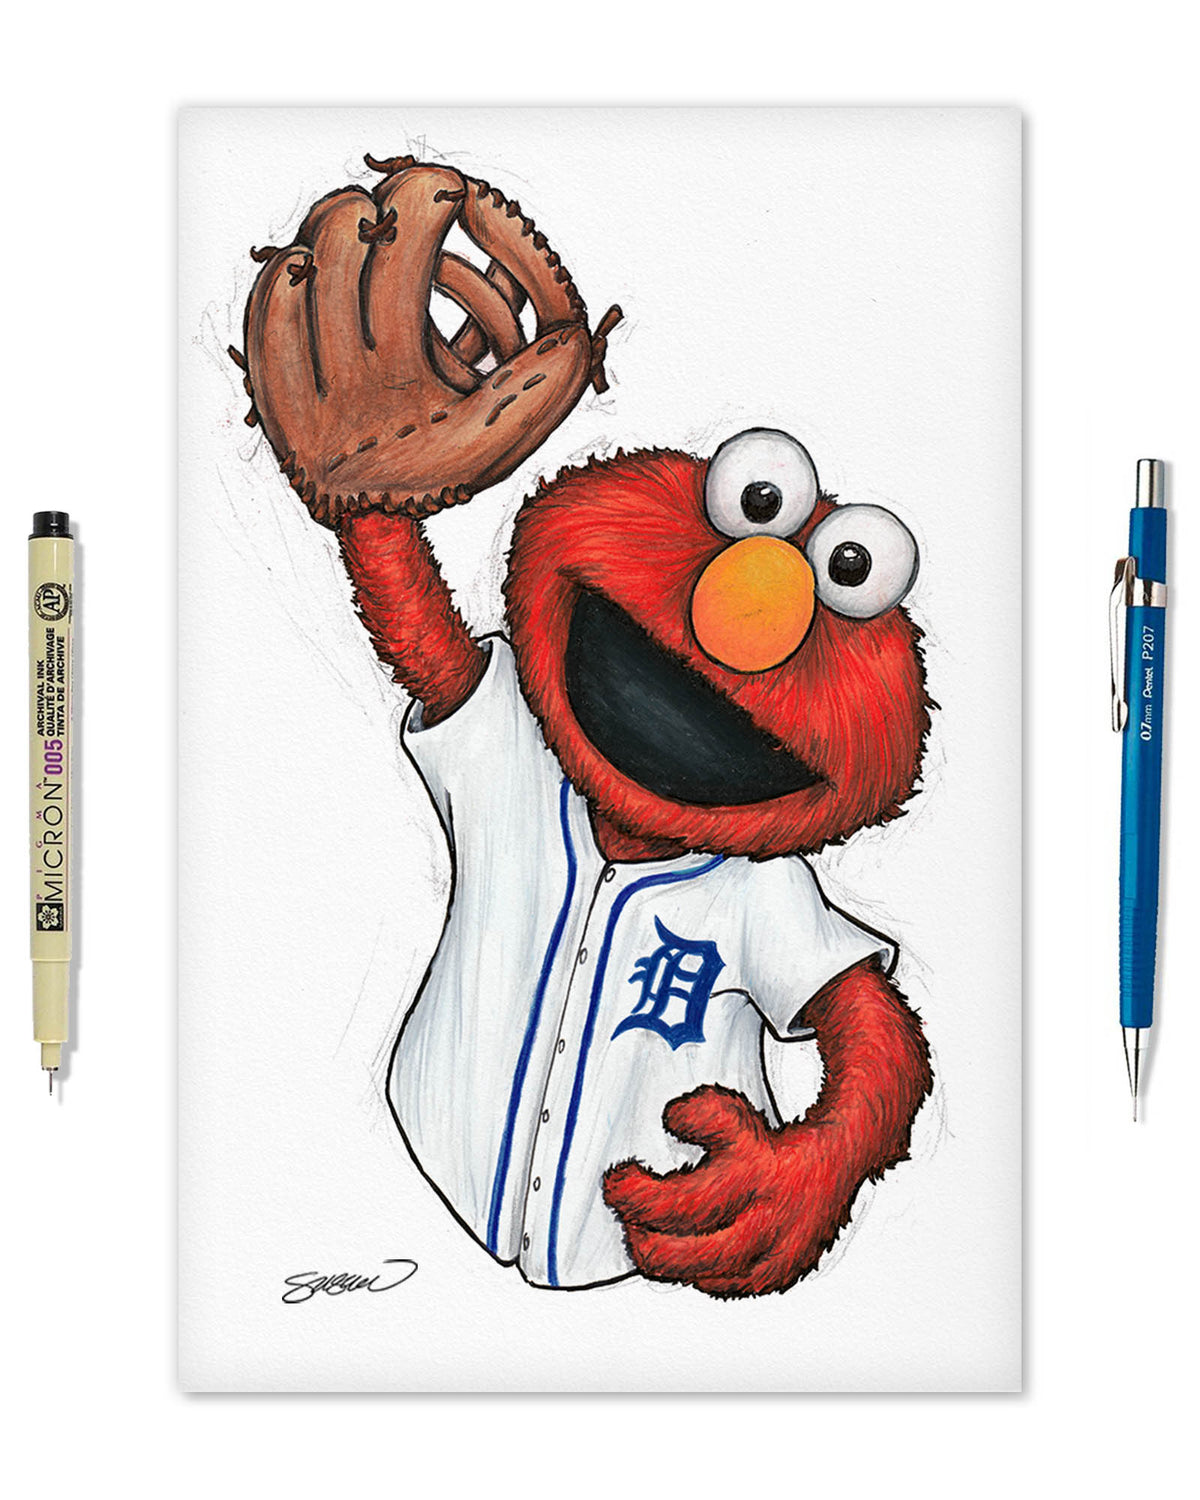 ELMO x MLB Tigers Limited Edition Fine Art Print